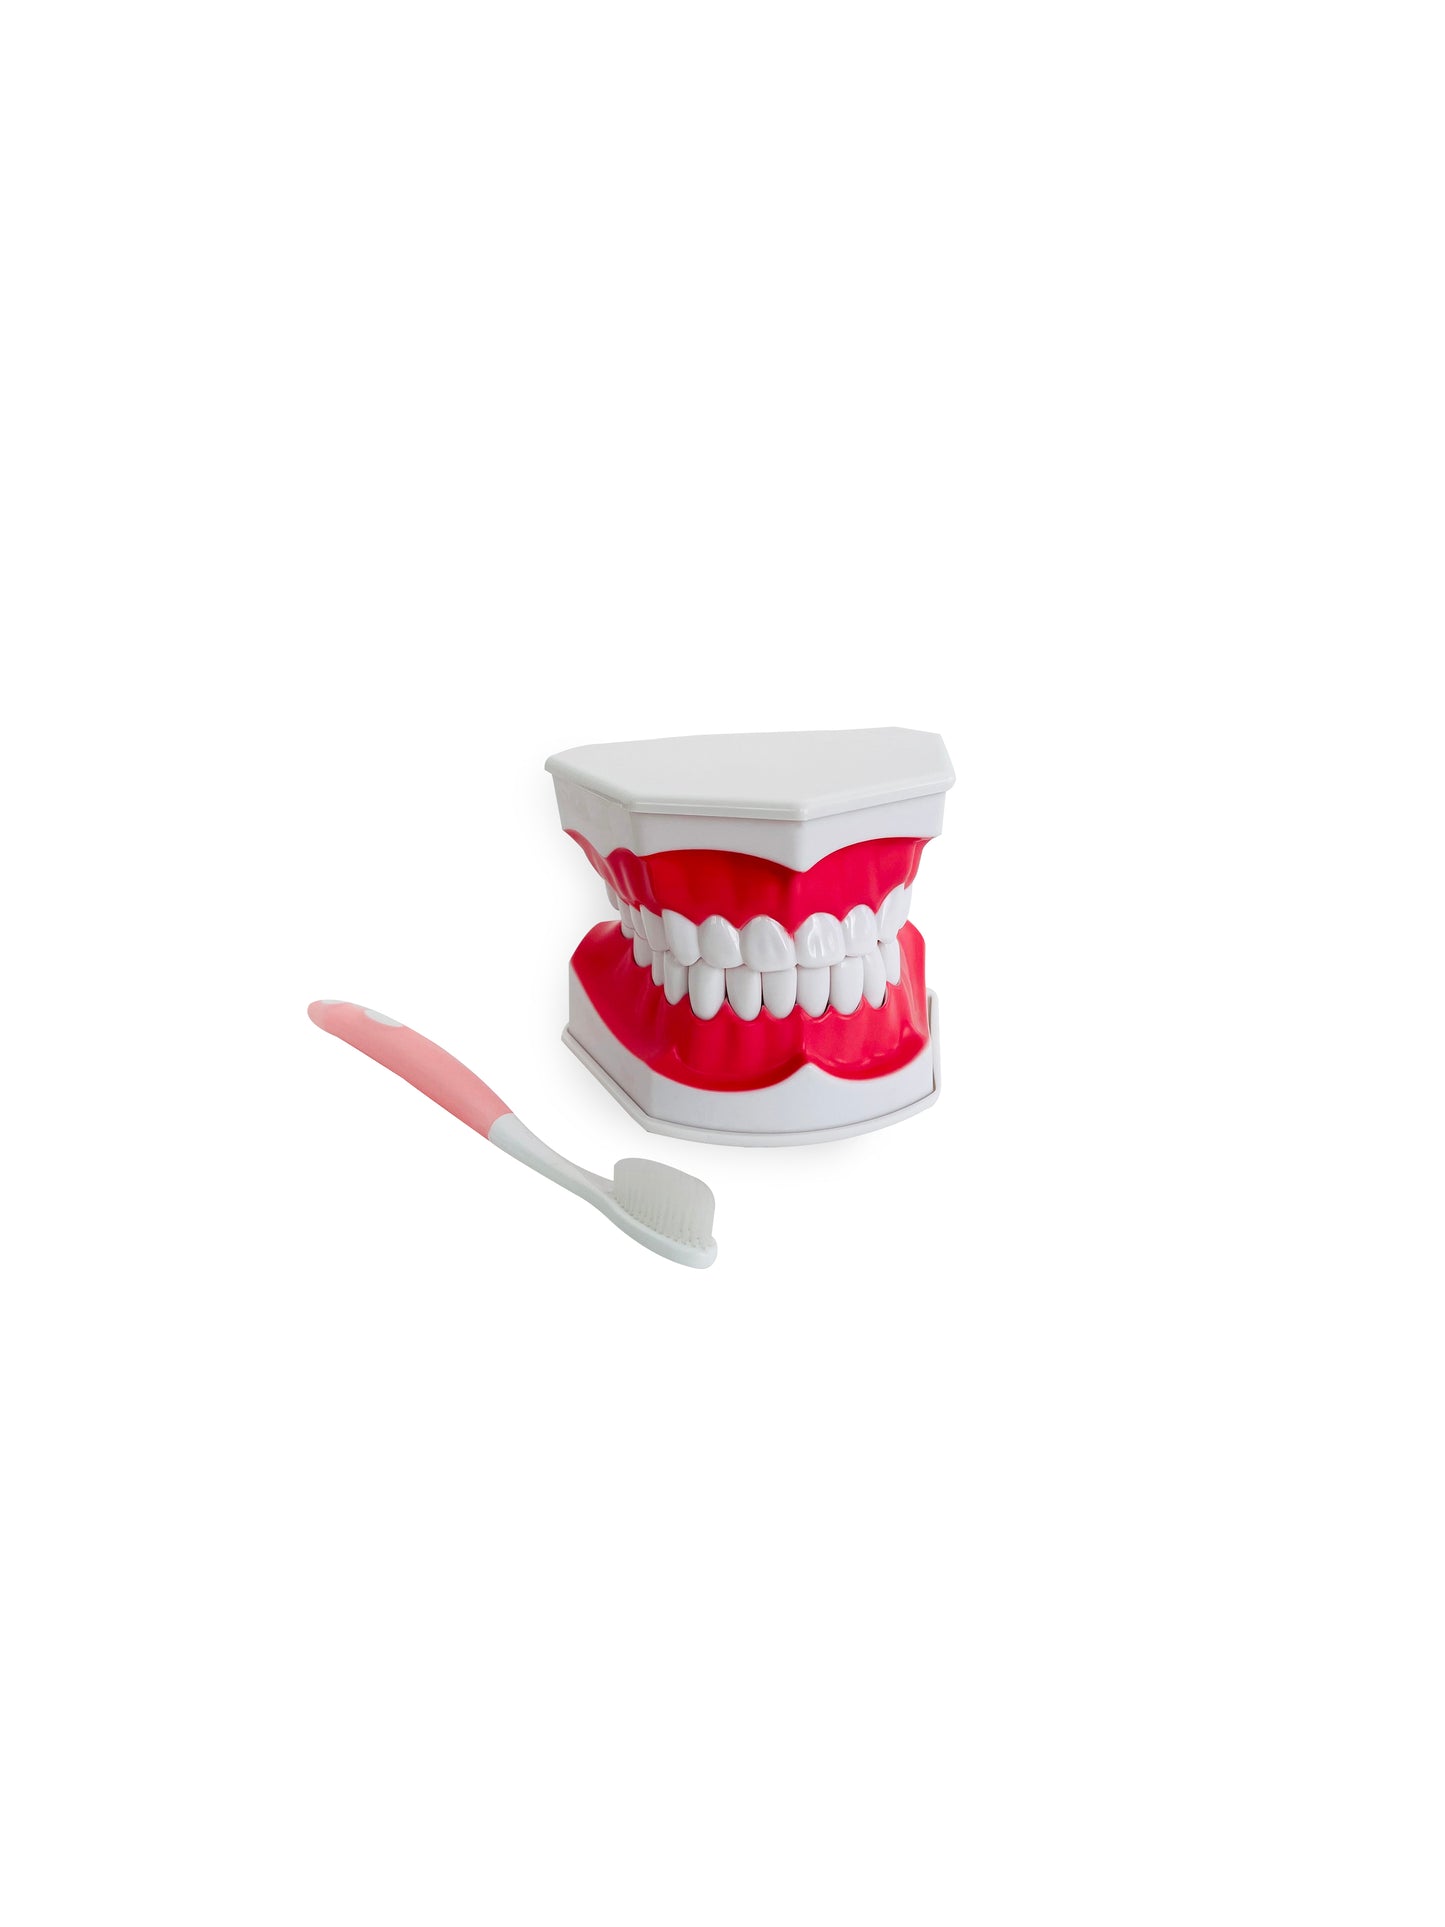 الفك التشريحي مع فرشاة الأسنان